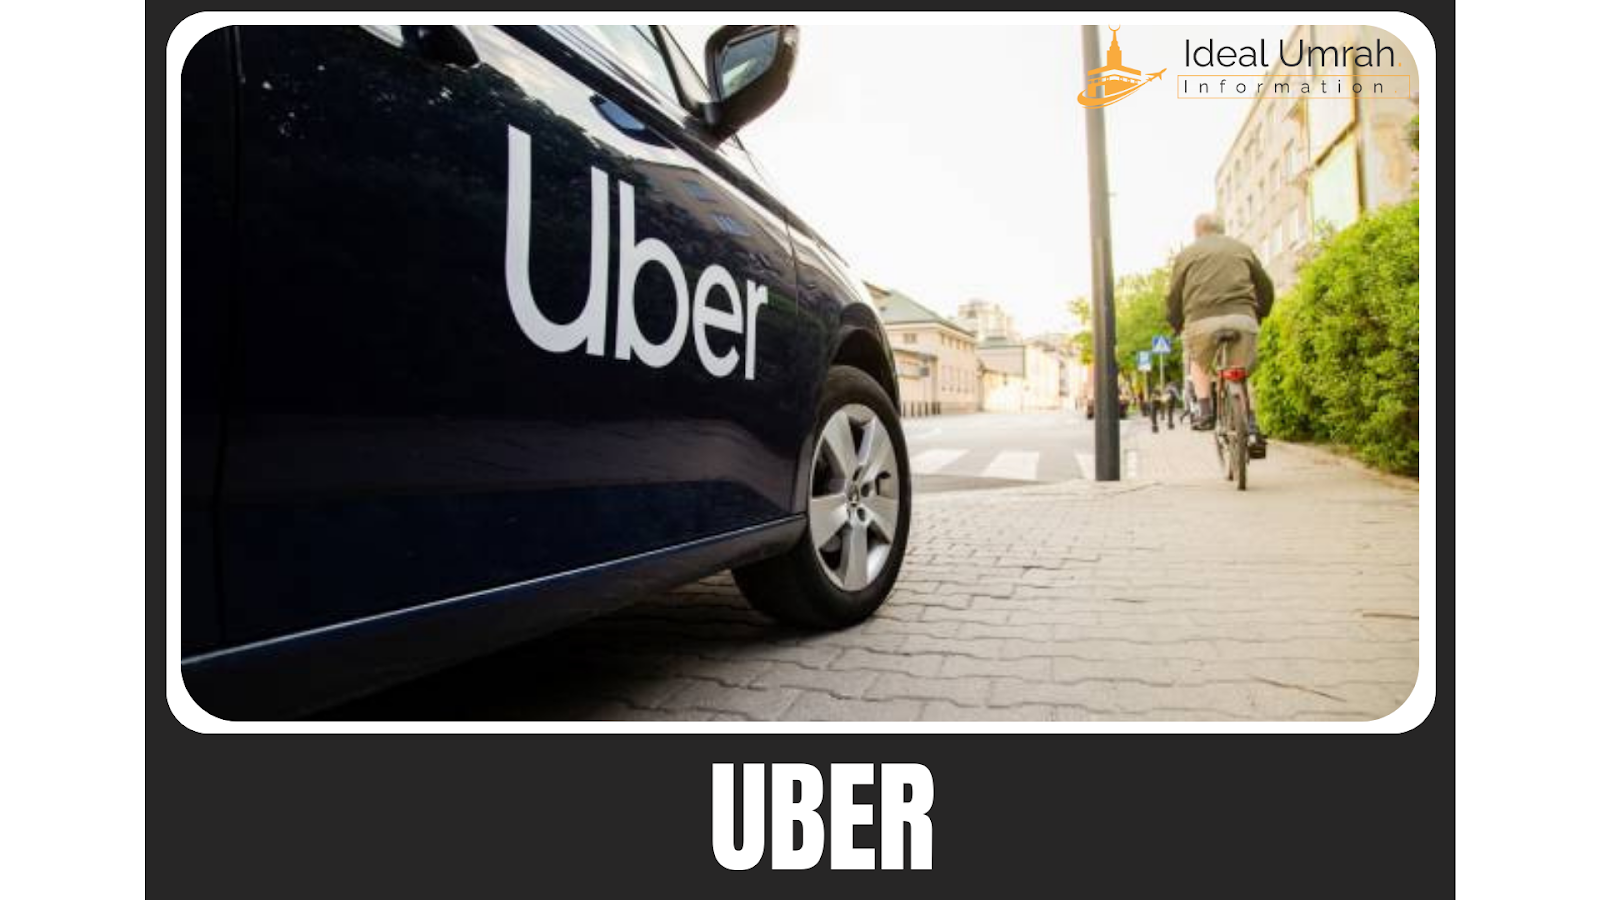 uber ride for umrah transportation